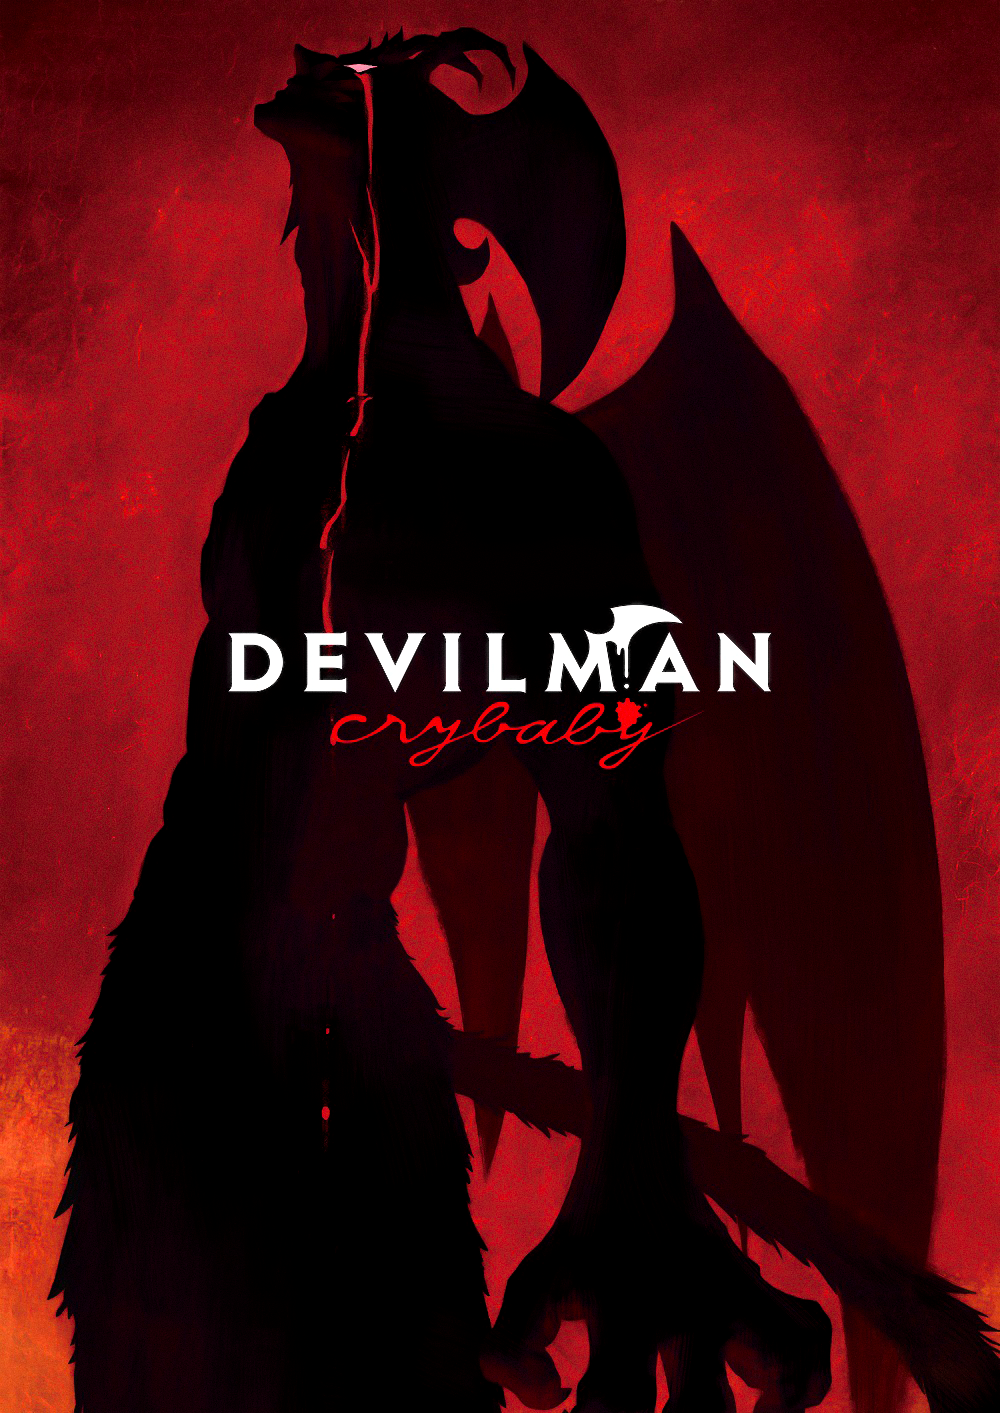 Devilman Crybaby | T1 | 10-10 | Dual Audio | Ac3 5.1